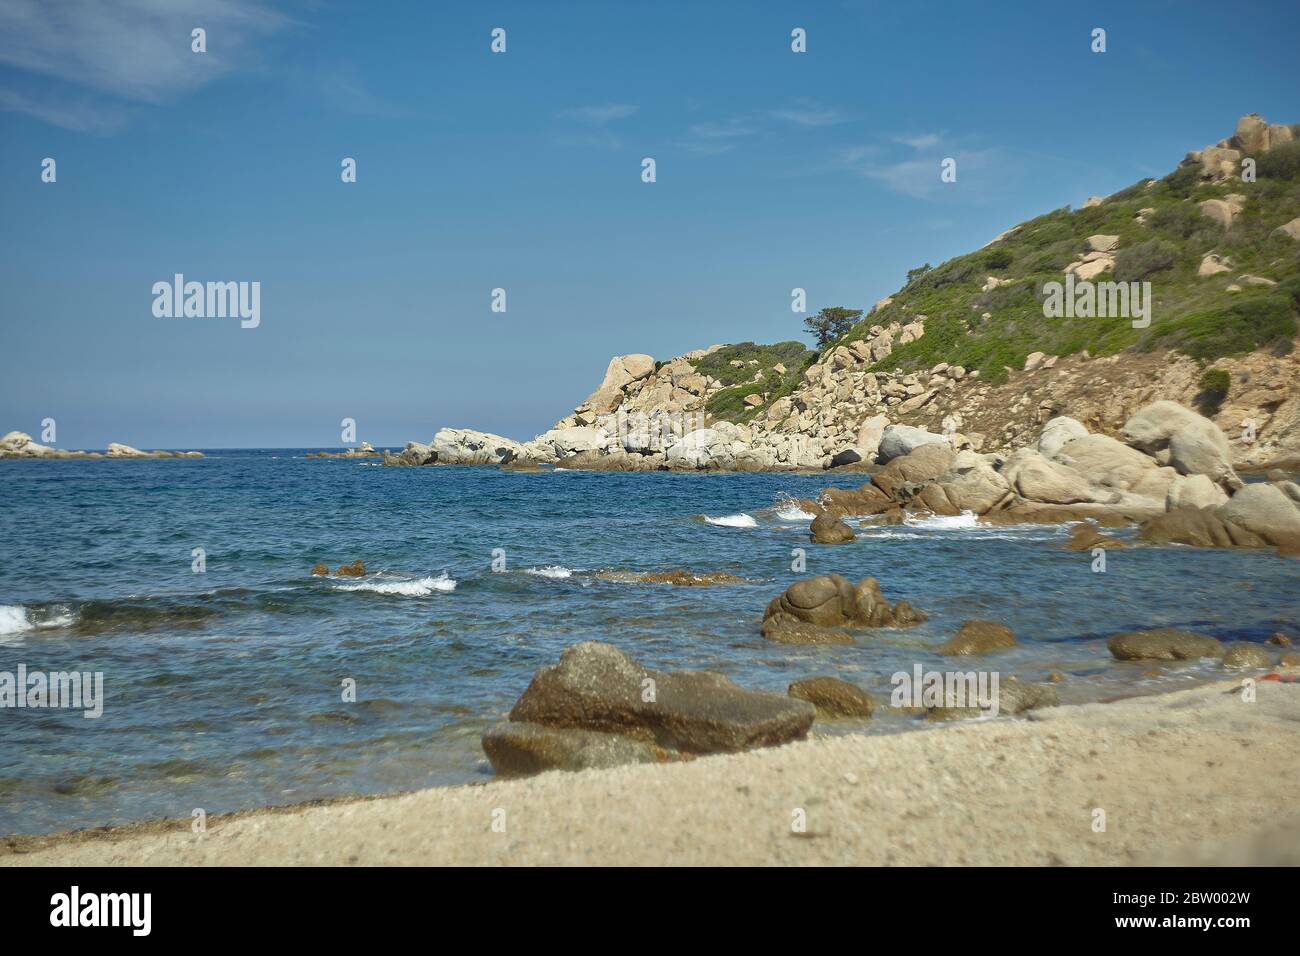 Dettaglio di una scogliera che si affaccia sul mar Mediterraneo. Foto Stock